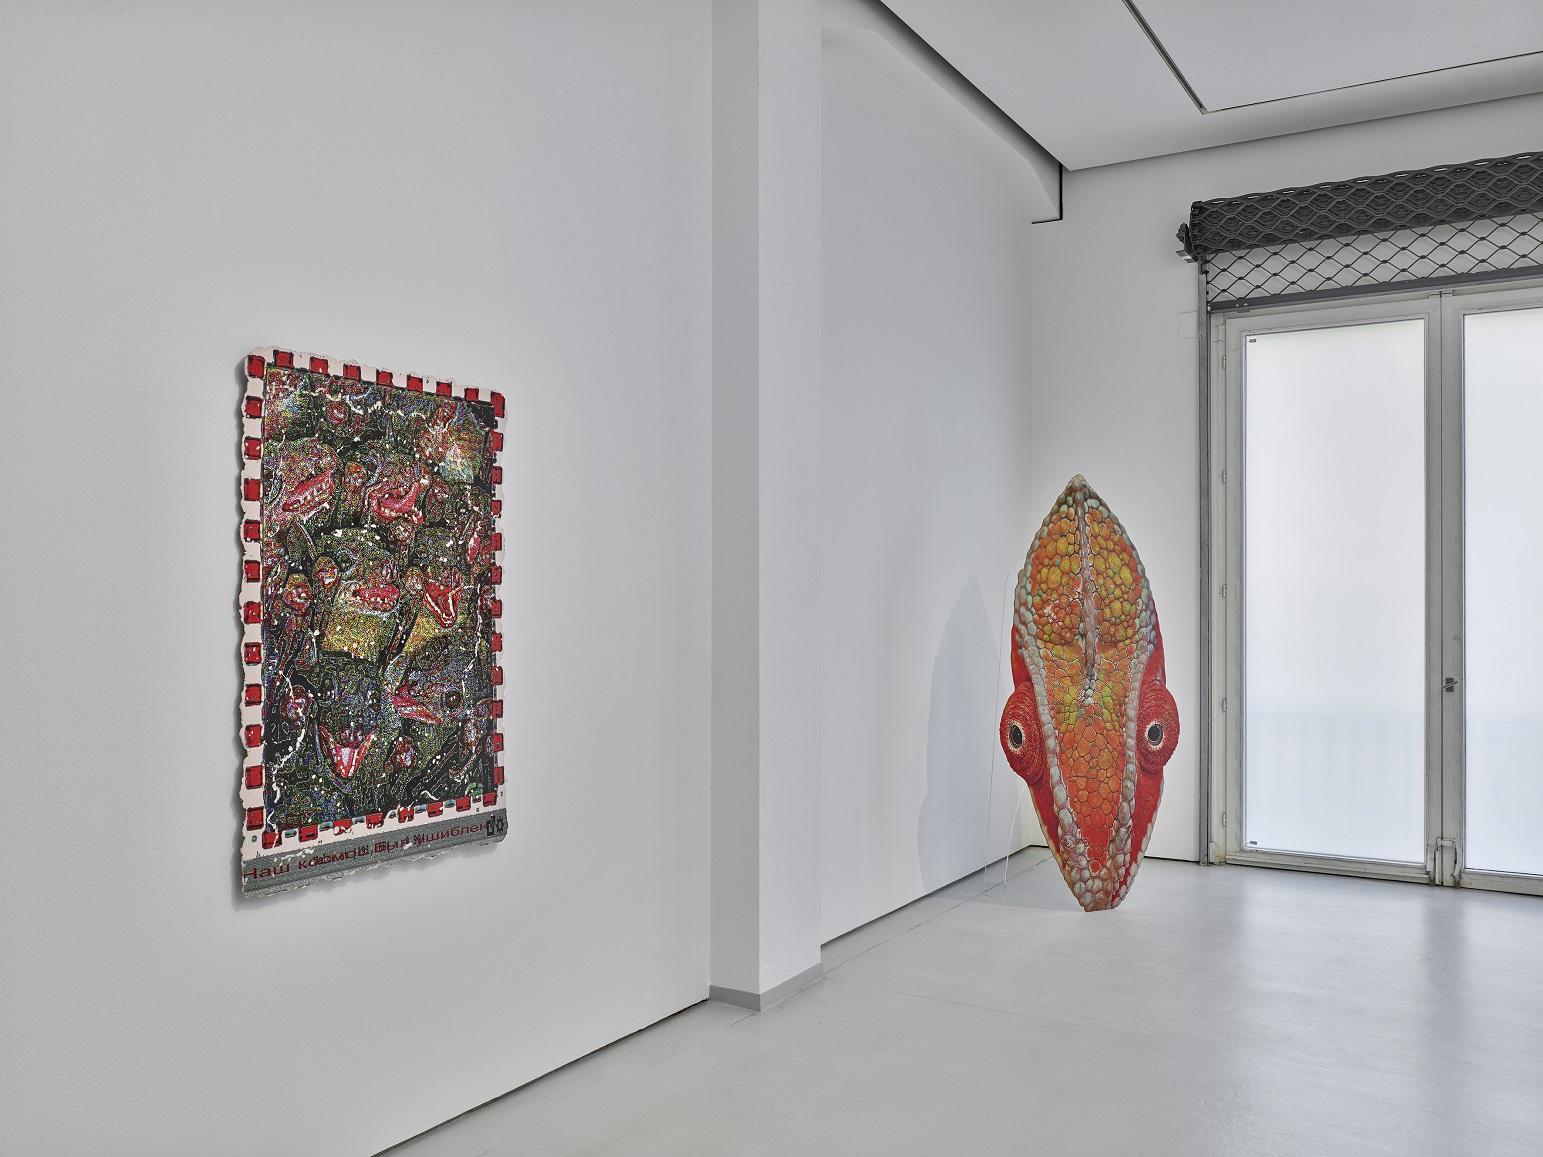 Installationsansicht Katja Novitskova in KAI 10 | ARTHENA FOUNDATION, Courtesy die Künstlerin und Privatsammlung, Foto: Achim Kukulies, Düsseldorf